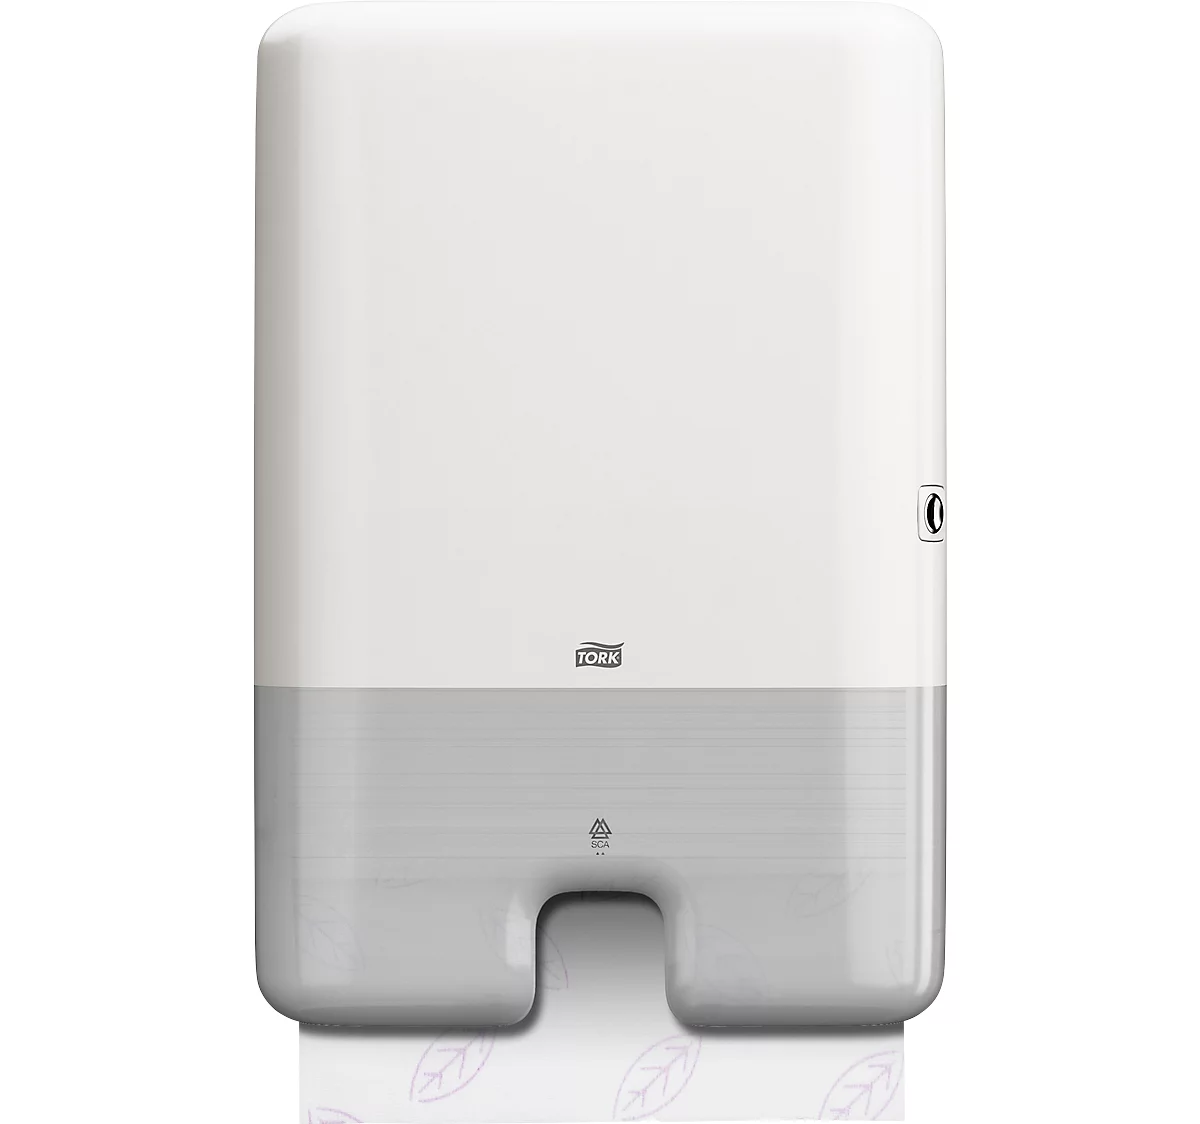 Dispensador de toallas Tork® Interfold 552000, dispensador de toallas individuales, protección contra el sobrellenado, grande, plástico, blanco